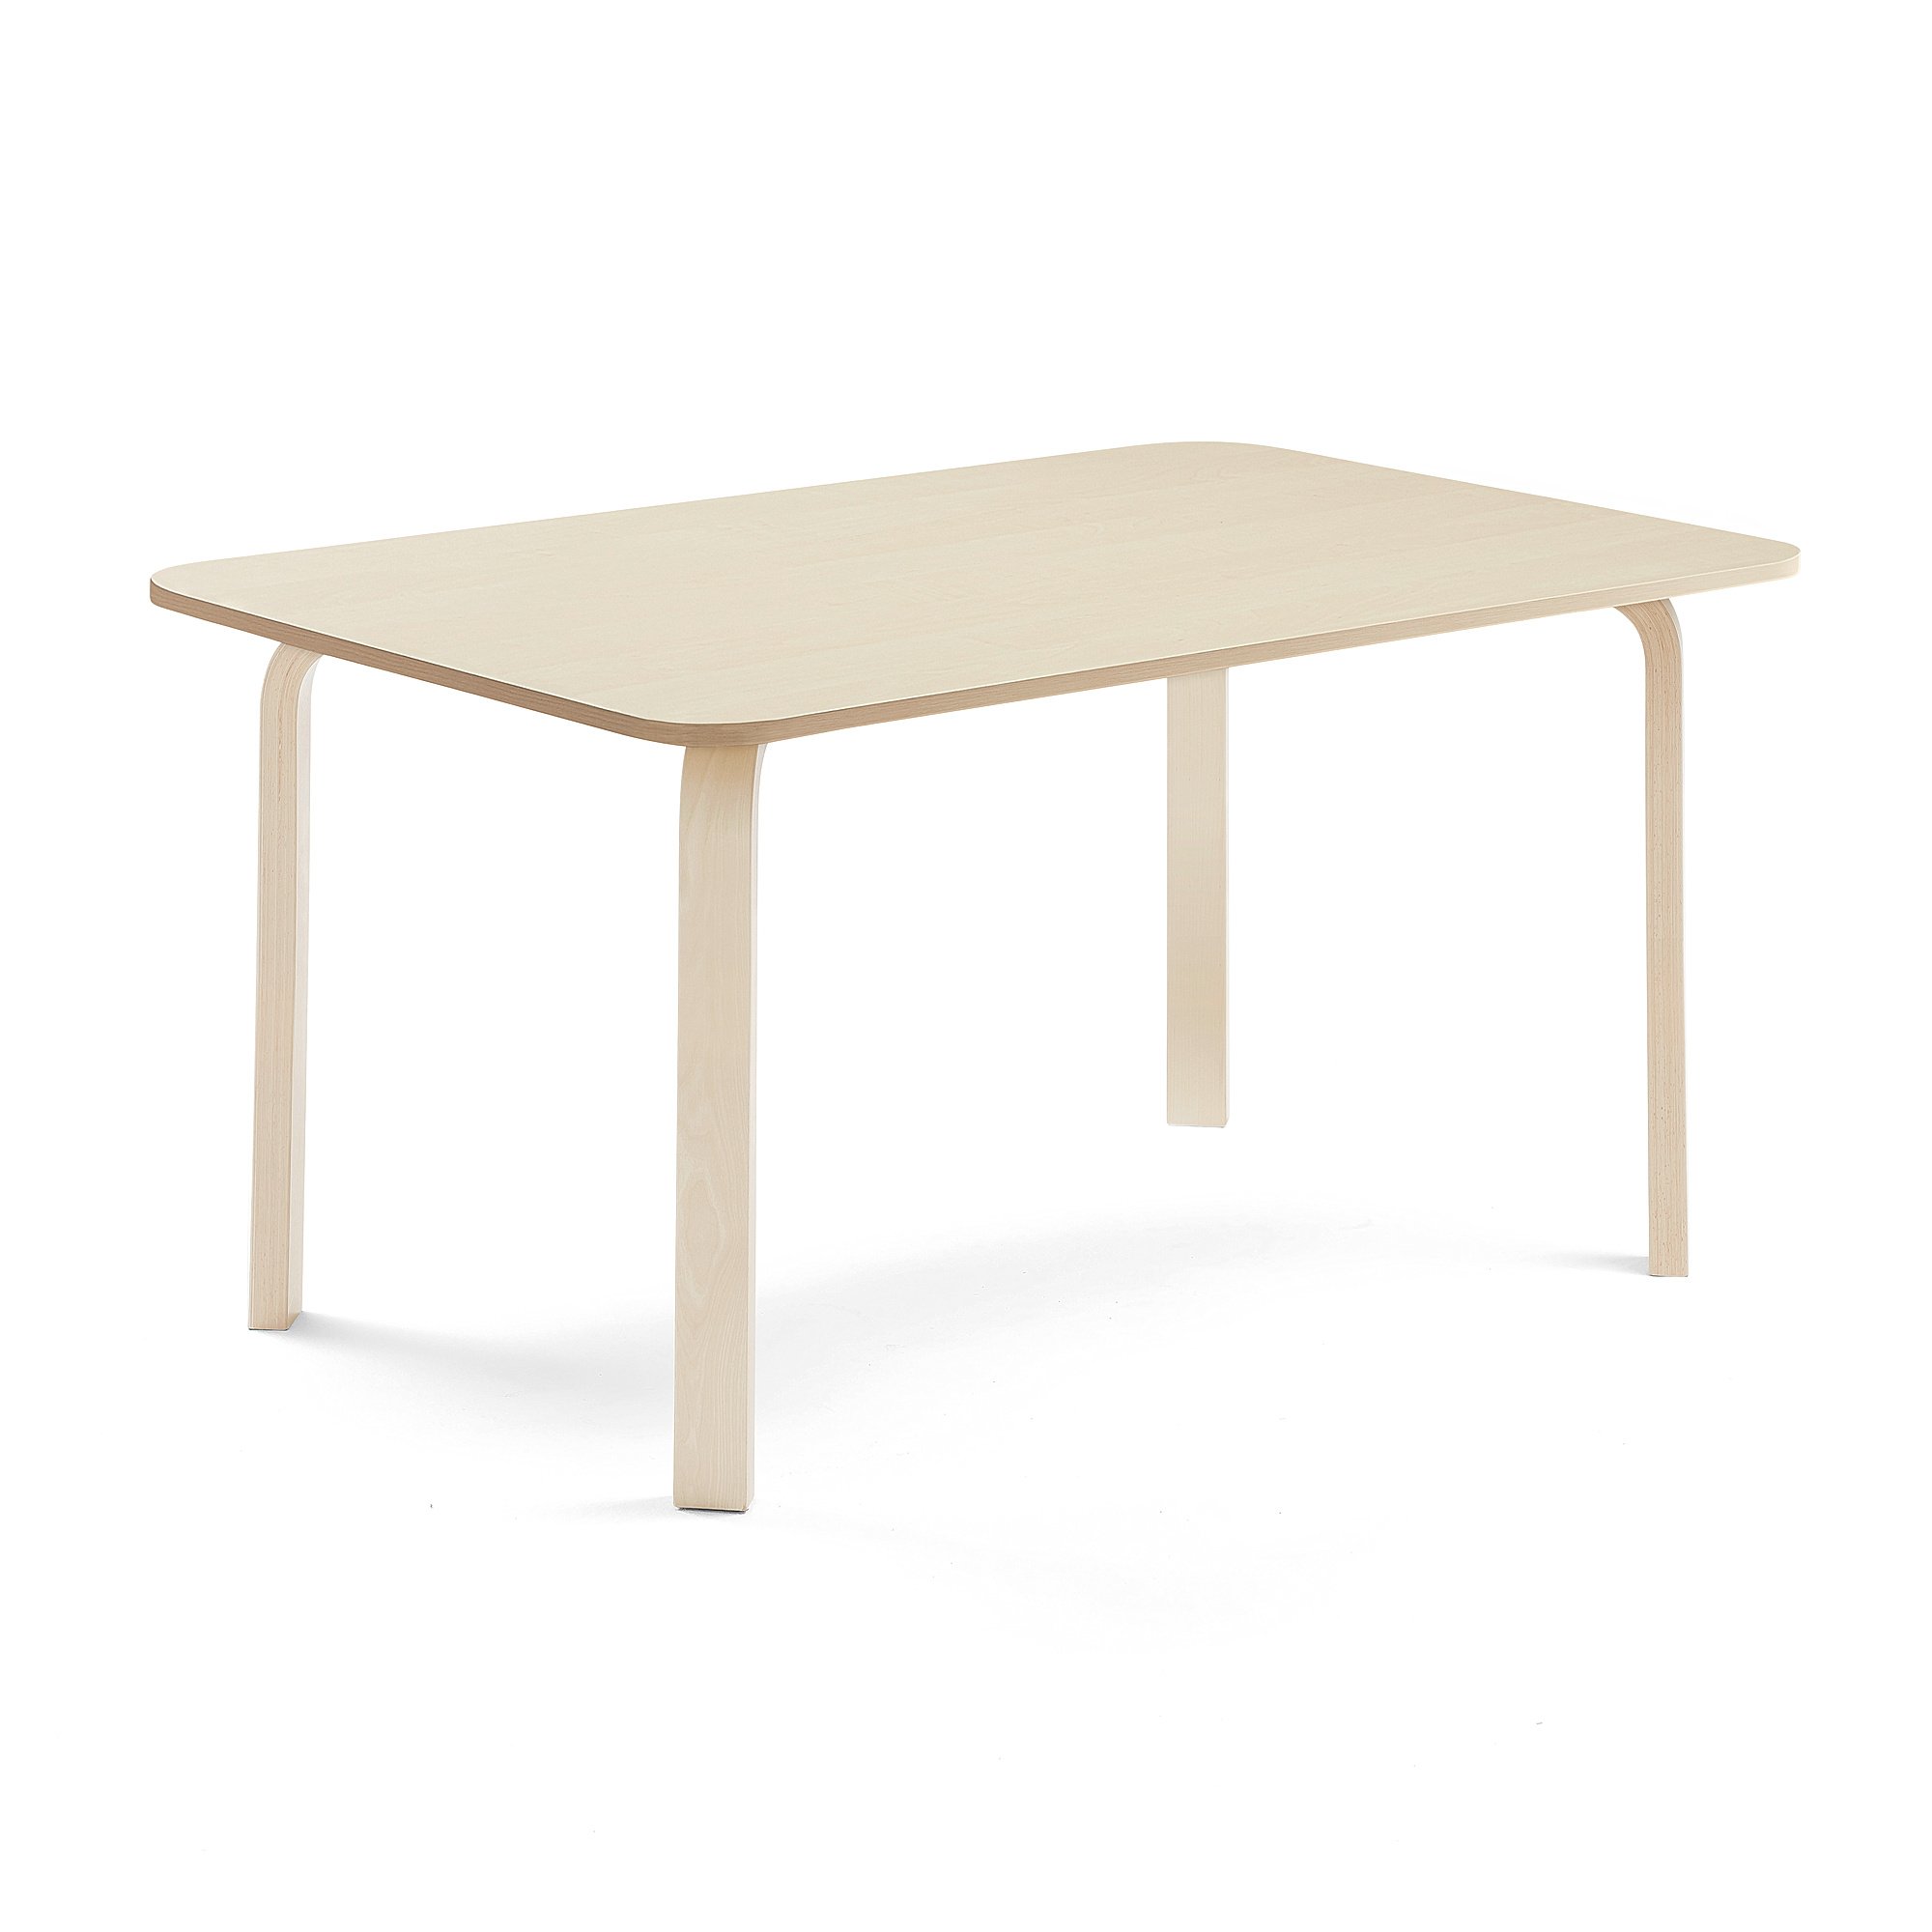 Stůl ELTON, 1400x800x640 mm, bříza, akustická HPL deska, bříza